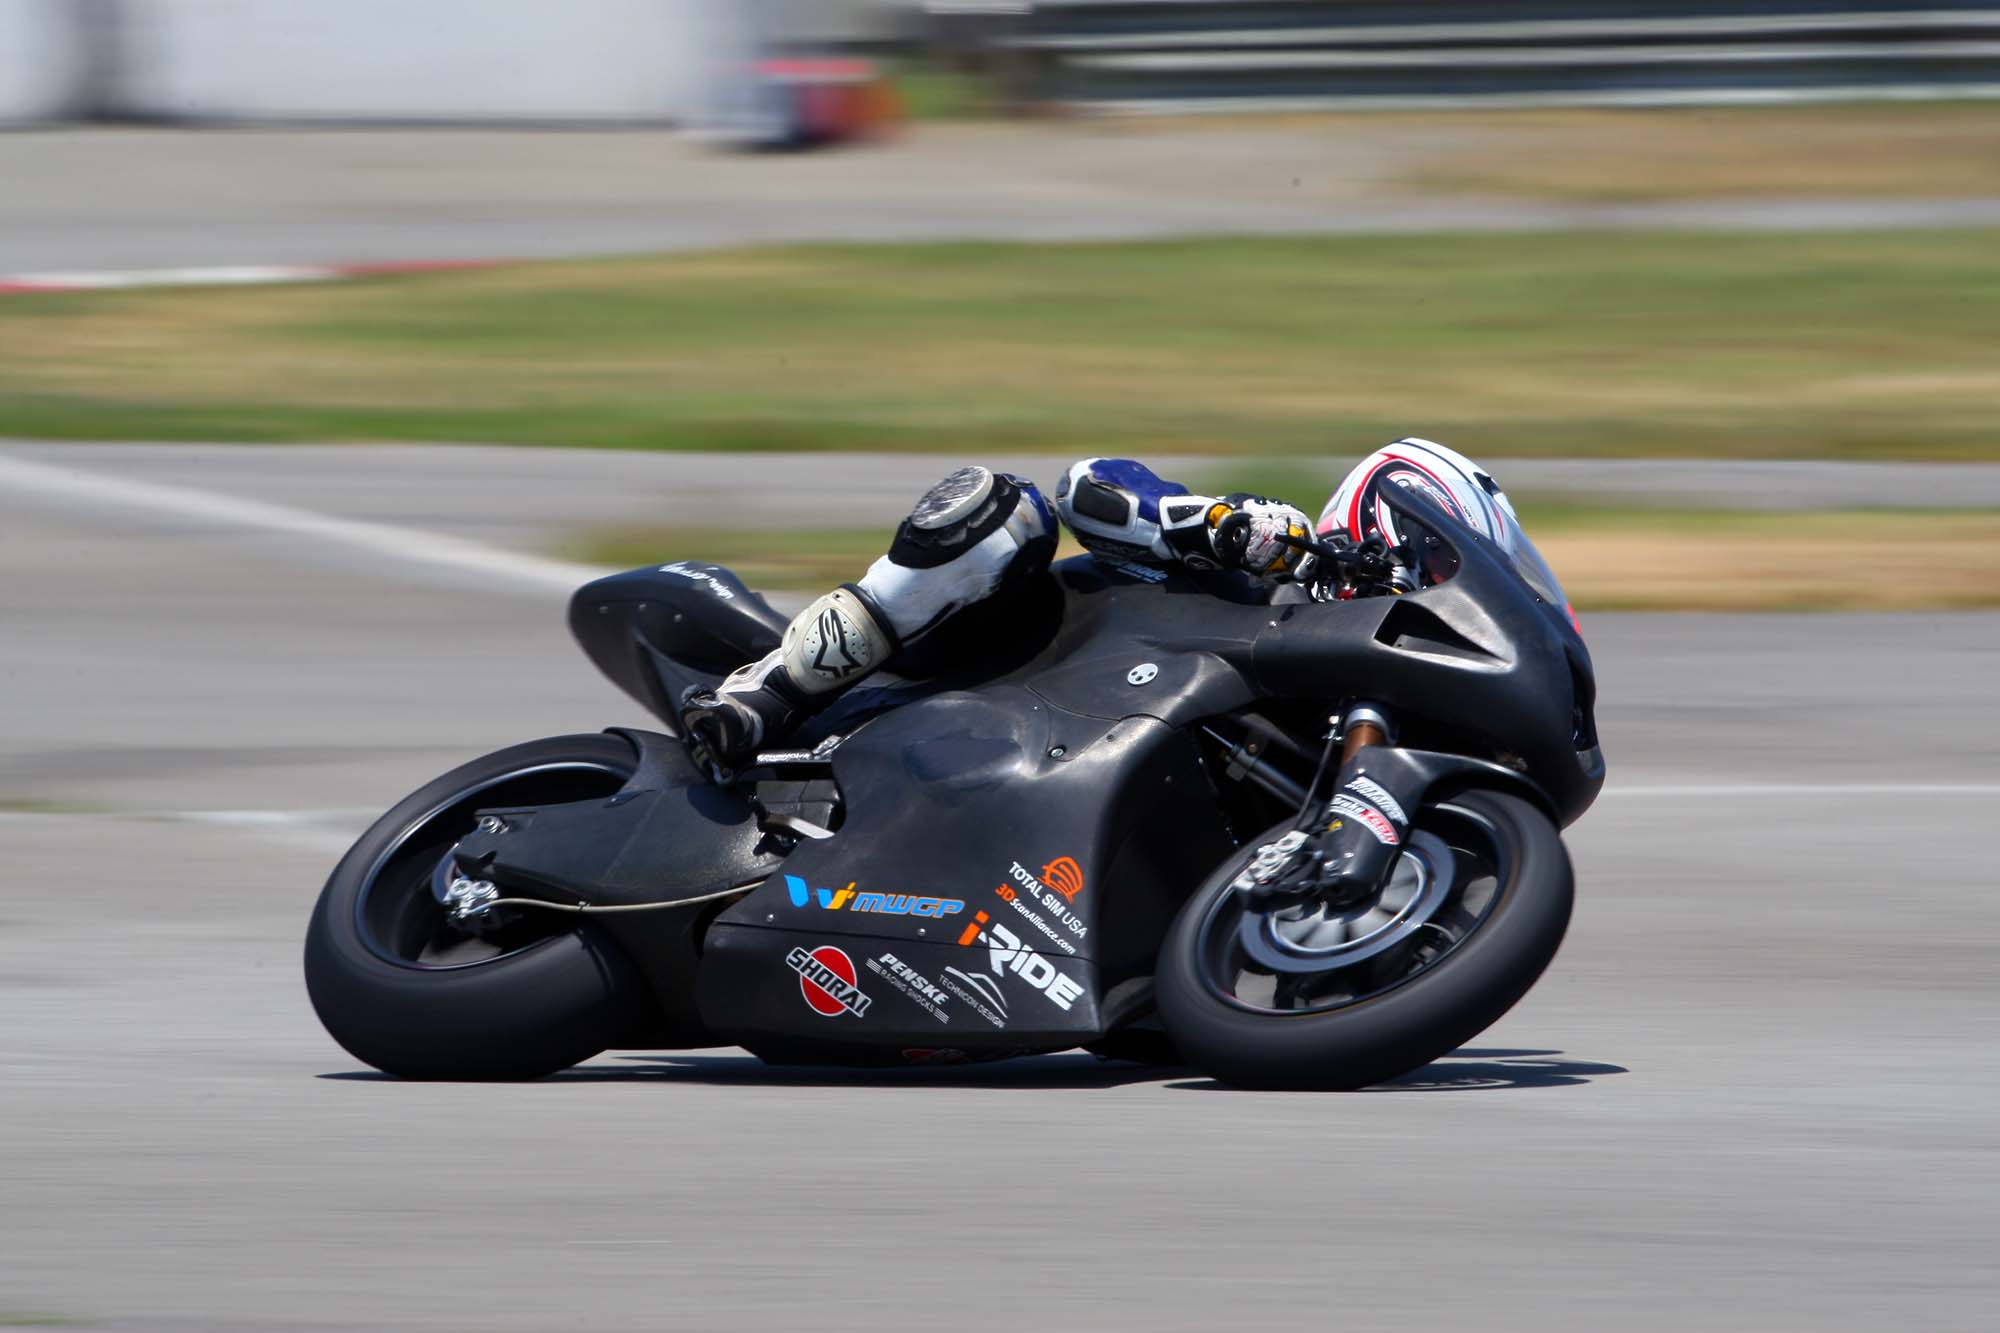 Taylormade-Carbon2-moto2-race-bike-03.jpg